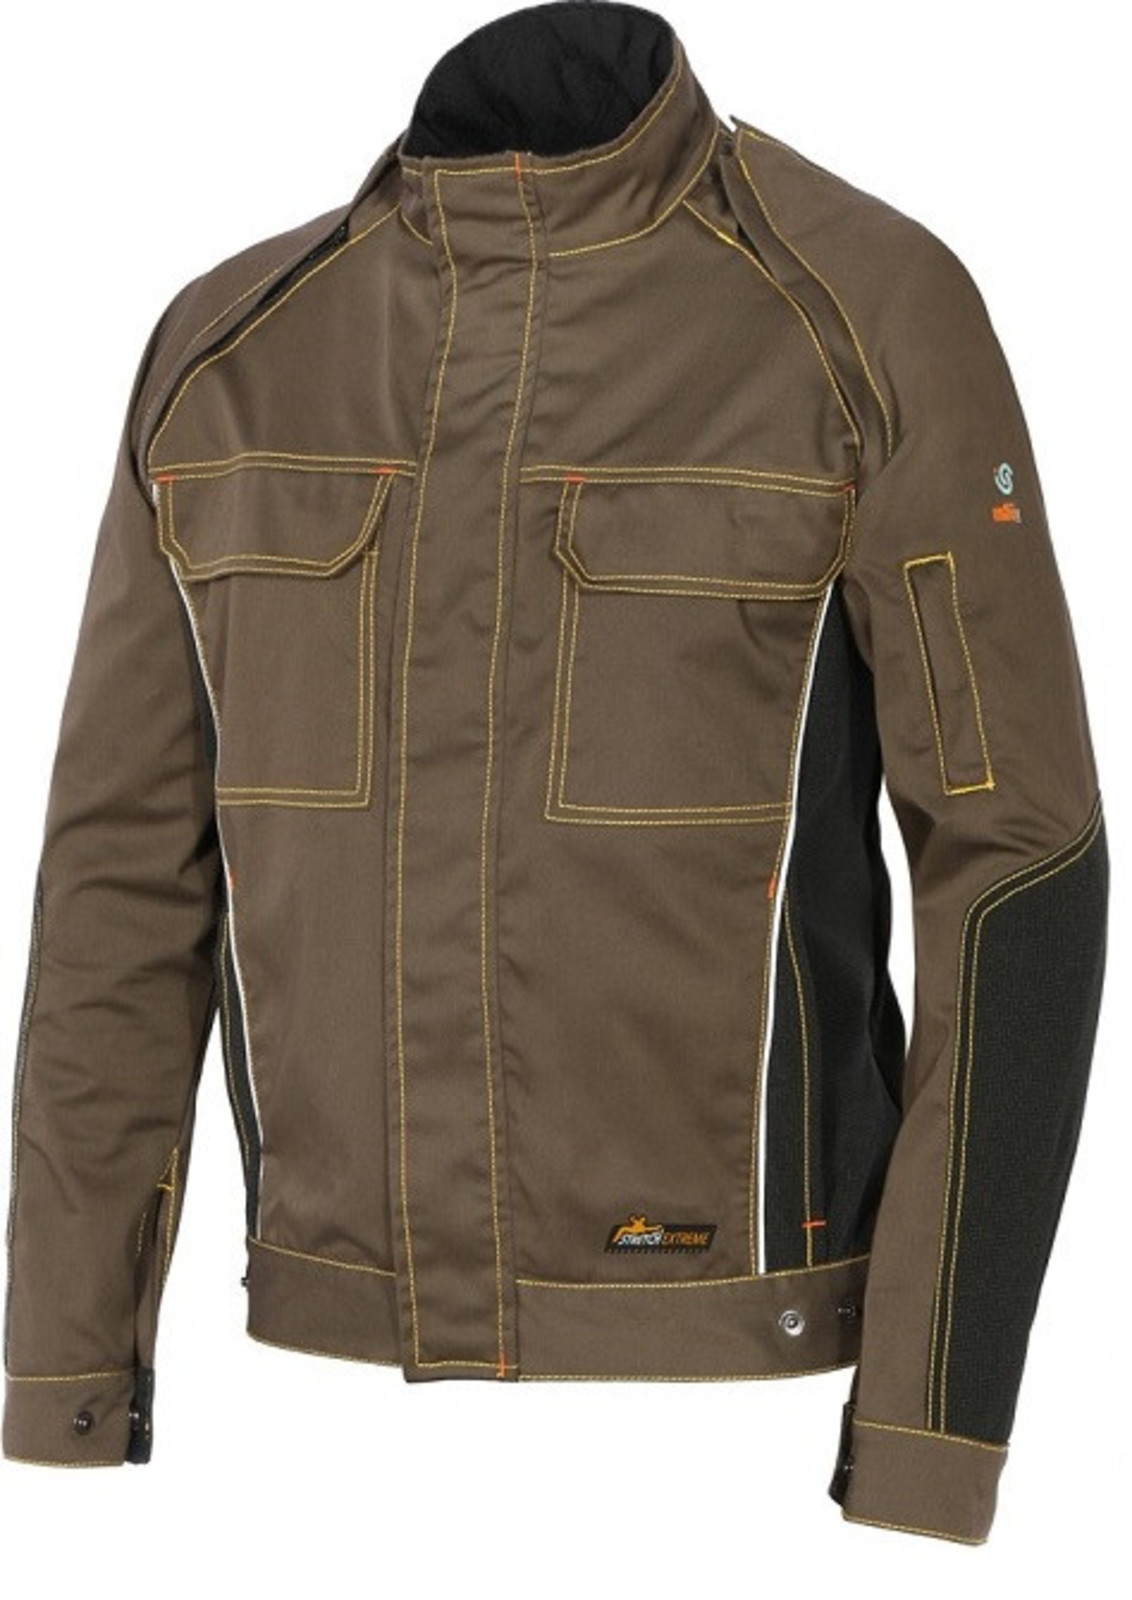 Strečová montérková bunda  ISSA Stretch Extreme 2v1 - veľkosť: XL, farba: khaki